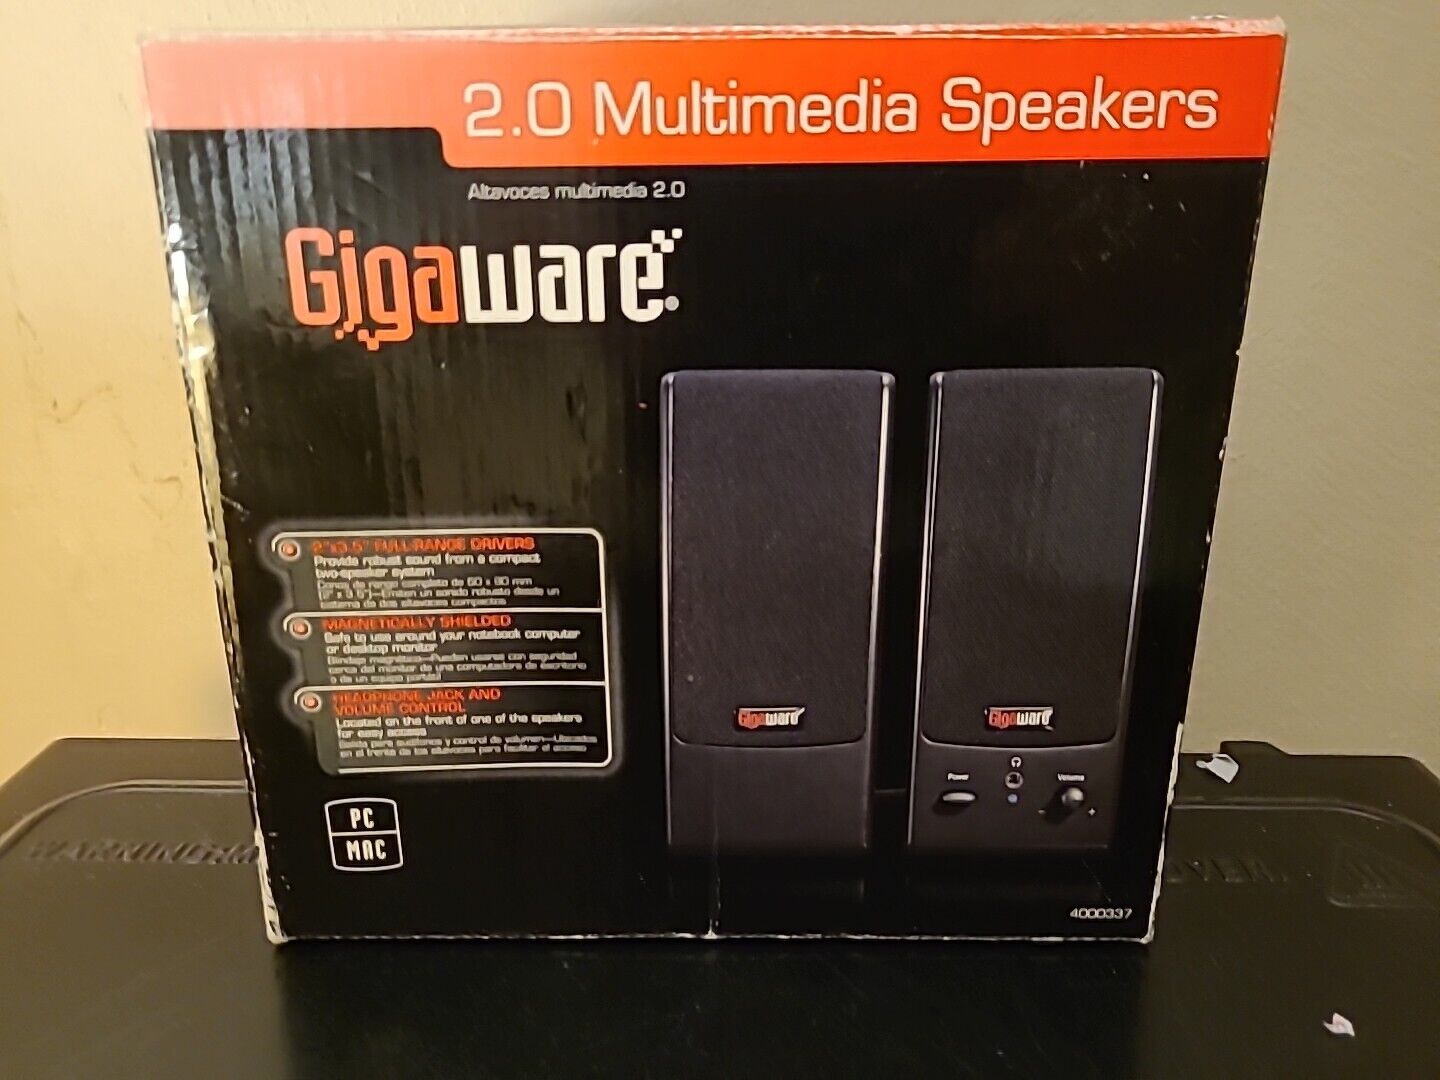 Gigaware 2.0 Multimedia Speakers Brand New in Box Model 4000378